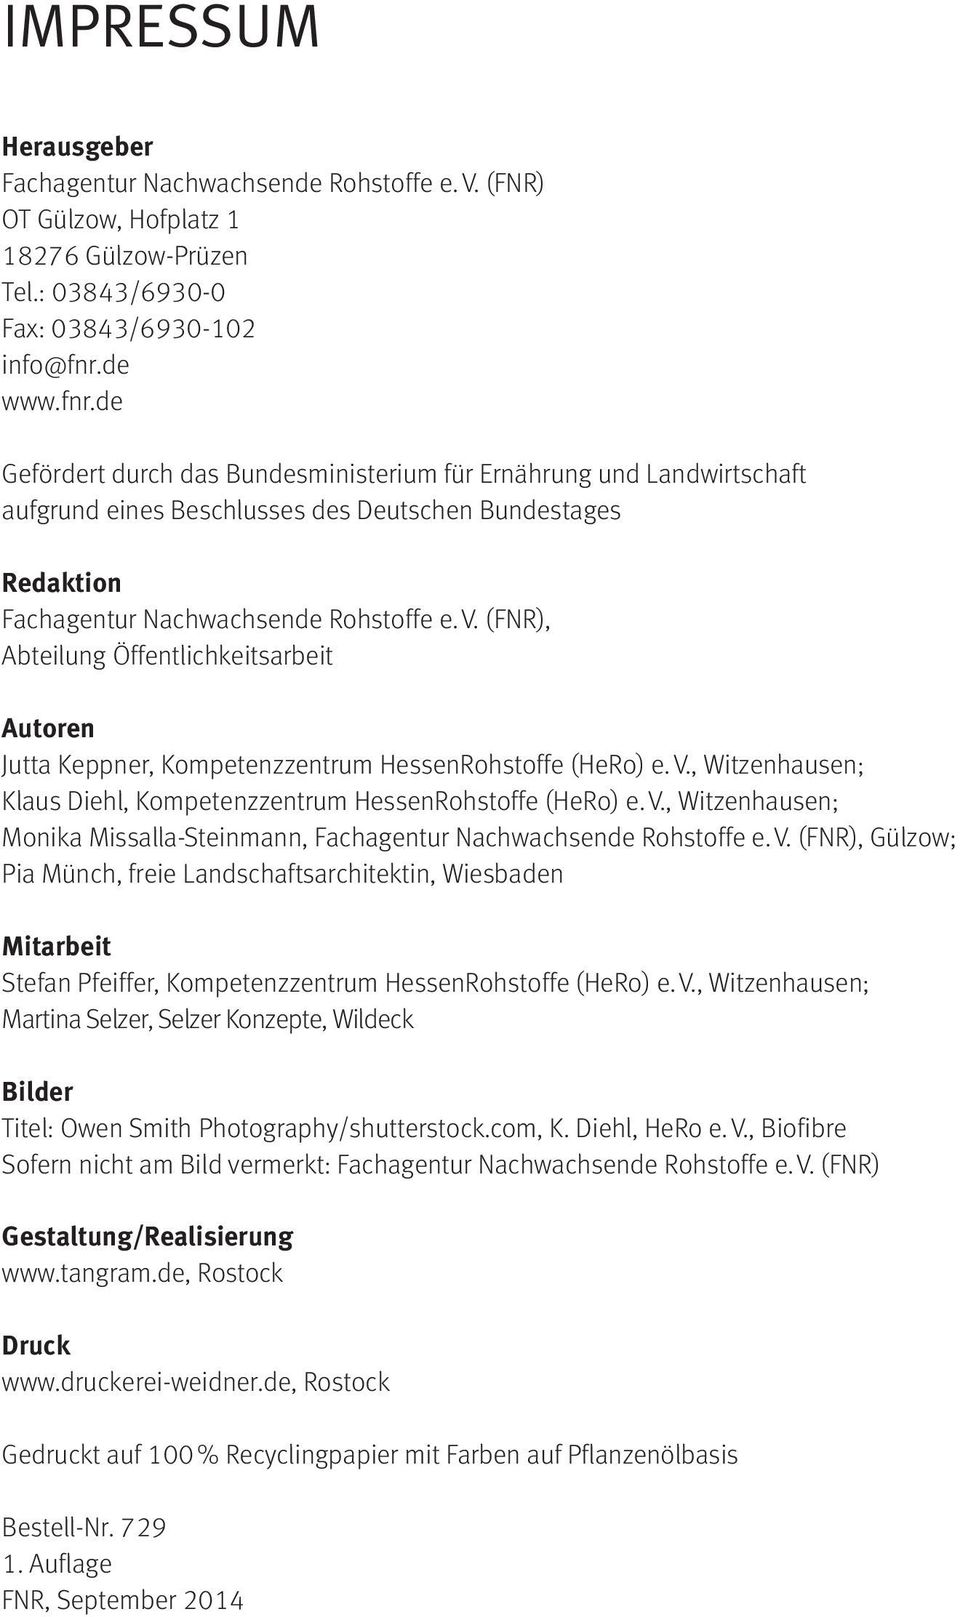 (FNR), Abteilung Öffentlichkeitsarbeit Autoren Jutta Keppner, Kompetenzzentrum HessenRohstoffe (HeRo) e. V., Witzenhausen; Klaus Diehl, Kompetenzzentrum HessenRohstoffe (HeRo) e. V., Witzenhausen; Monika Missalla-Steinmann, Fachagentur Nachwachsende Rohstoffe e.